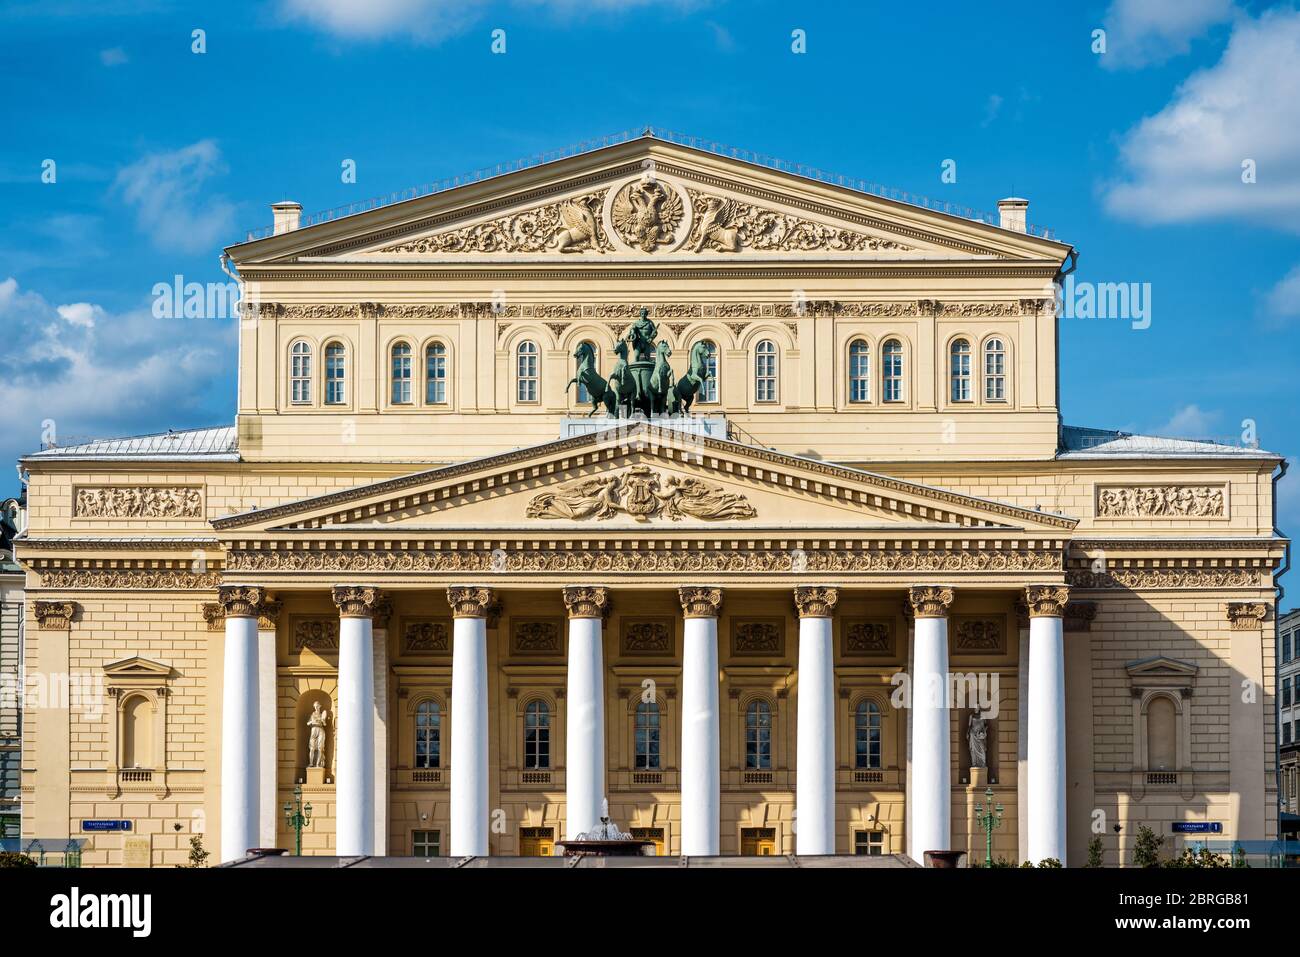 Il famoso Teatro Bolshoi nel centro di Mosca, Russia. Il Teatro Bolshoi è uno dei simboli della cultura russa. Foto Stock